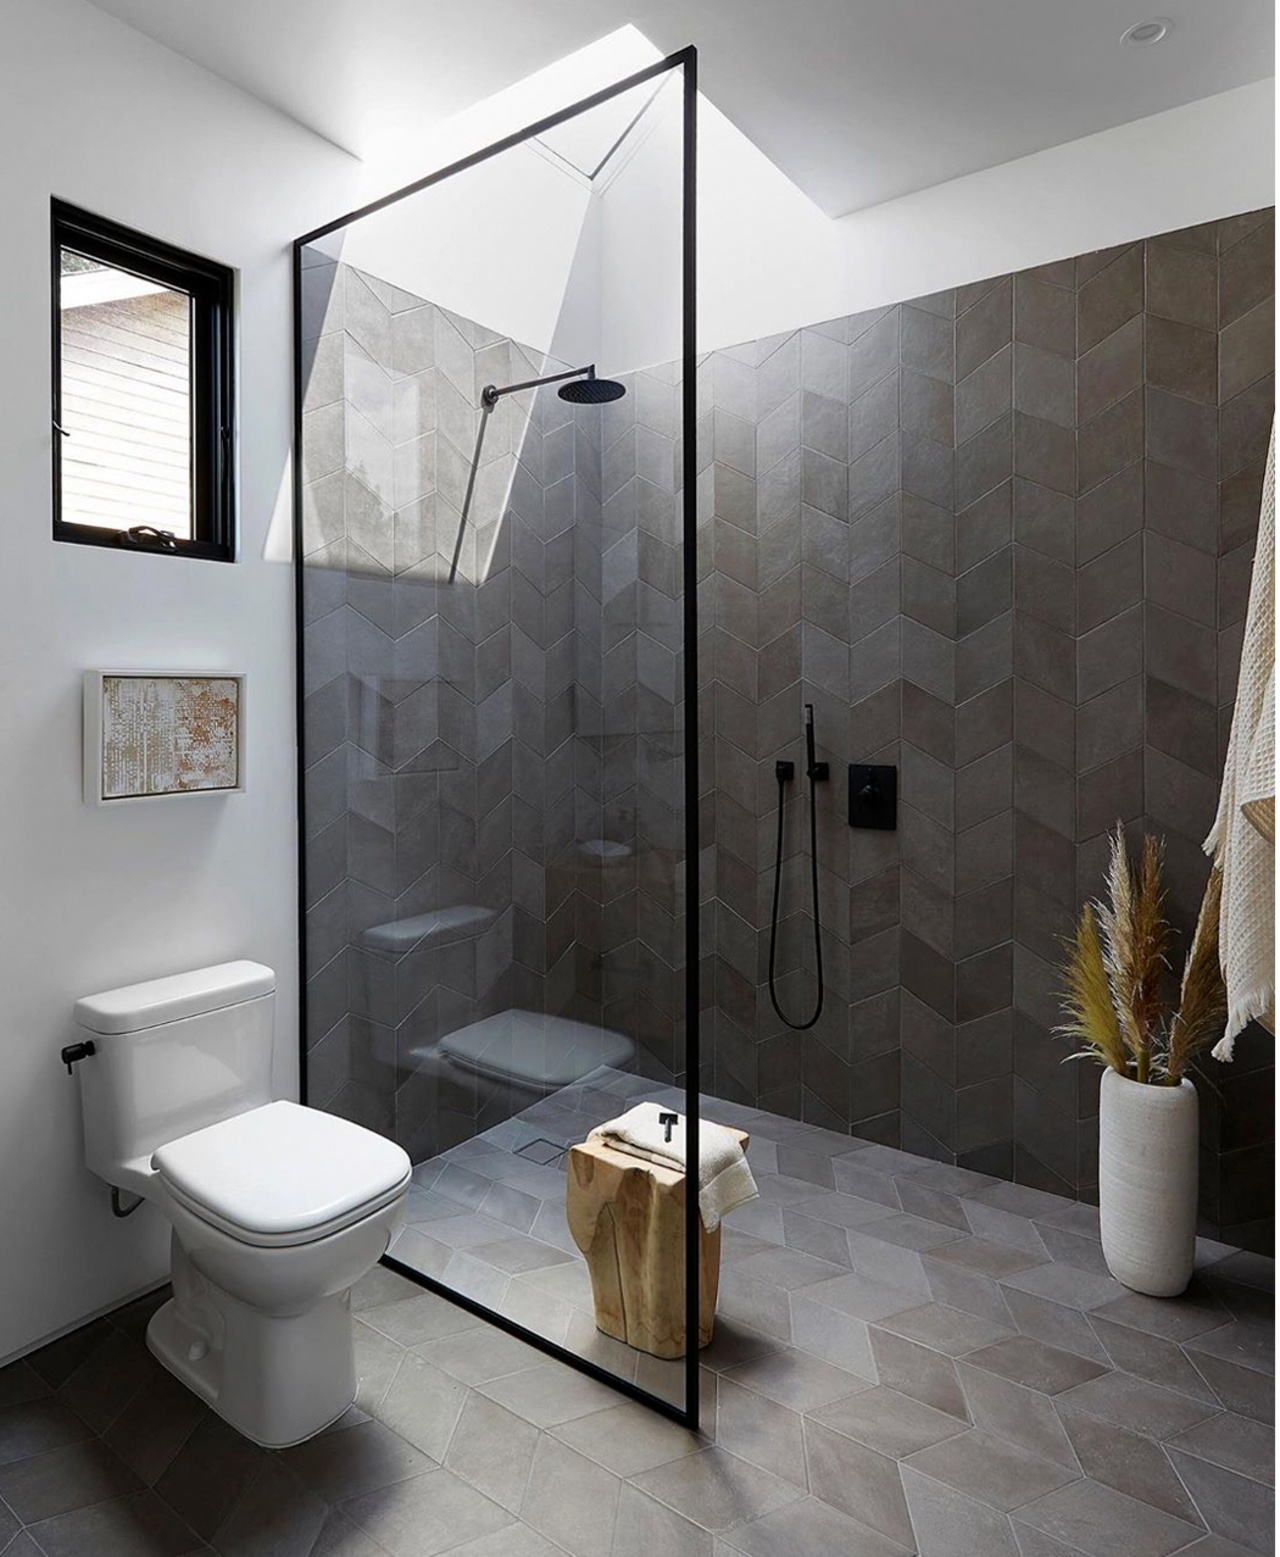 多种风格的浴室设计 满足你对浴室功能和视觉上的效果 普象网